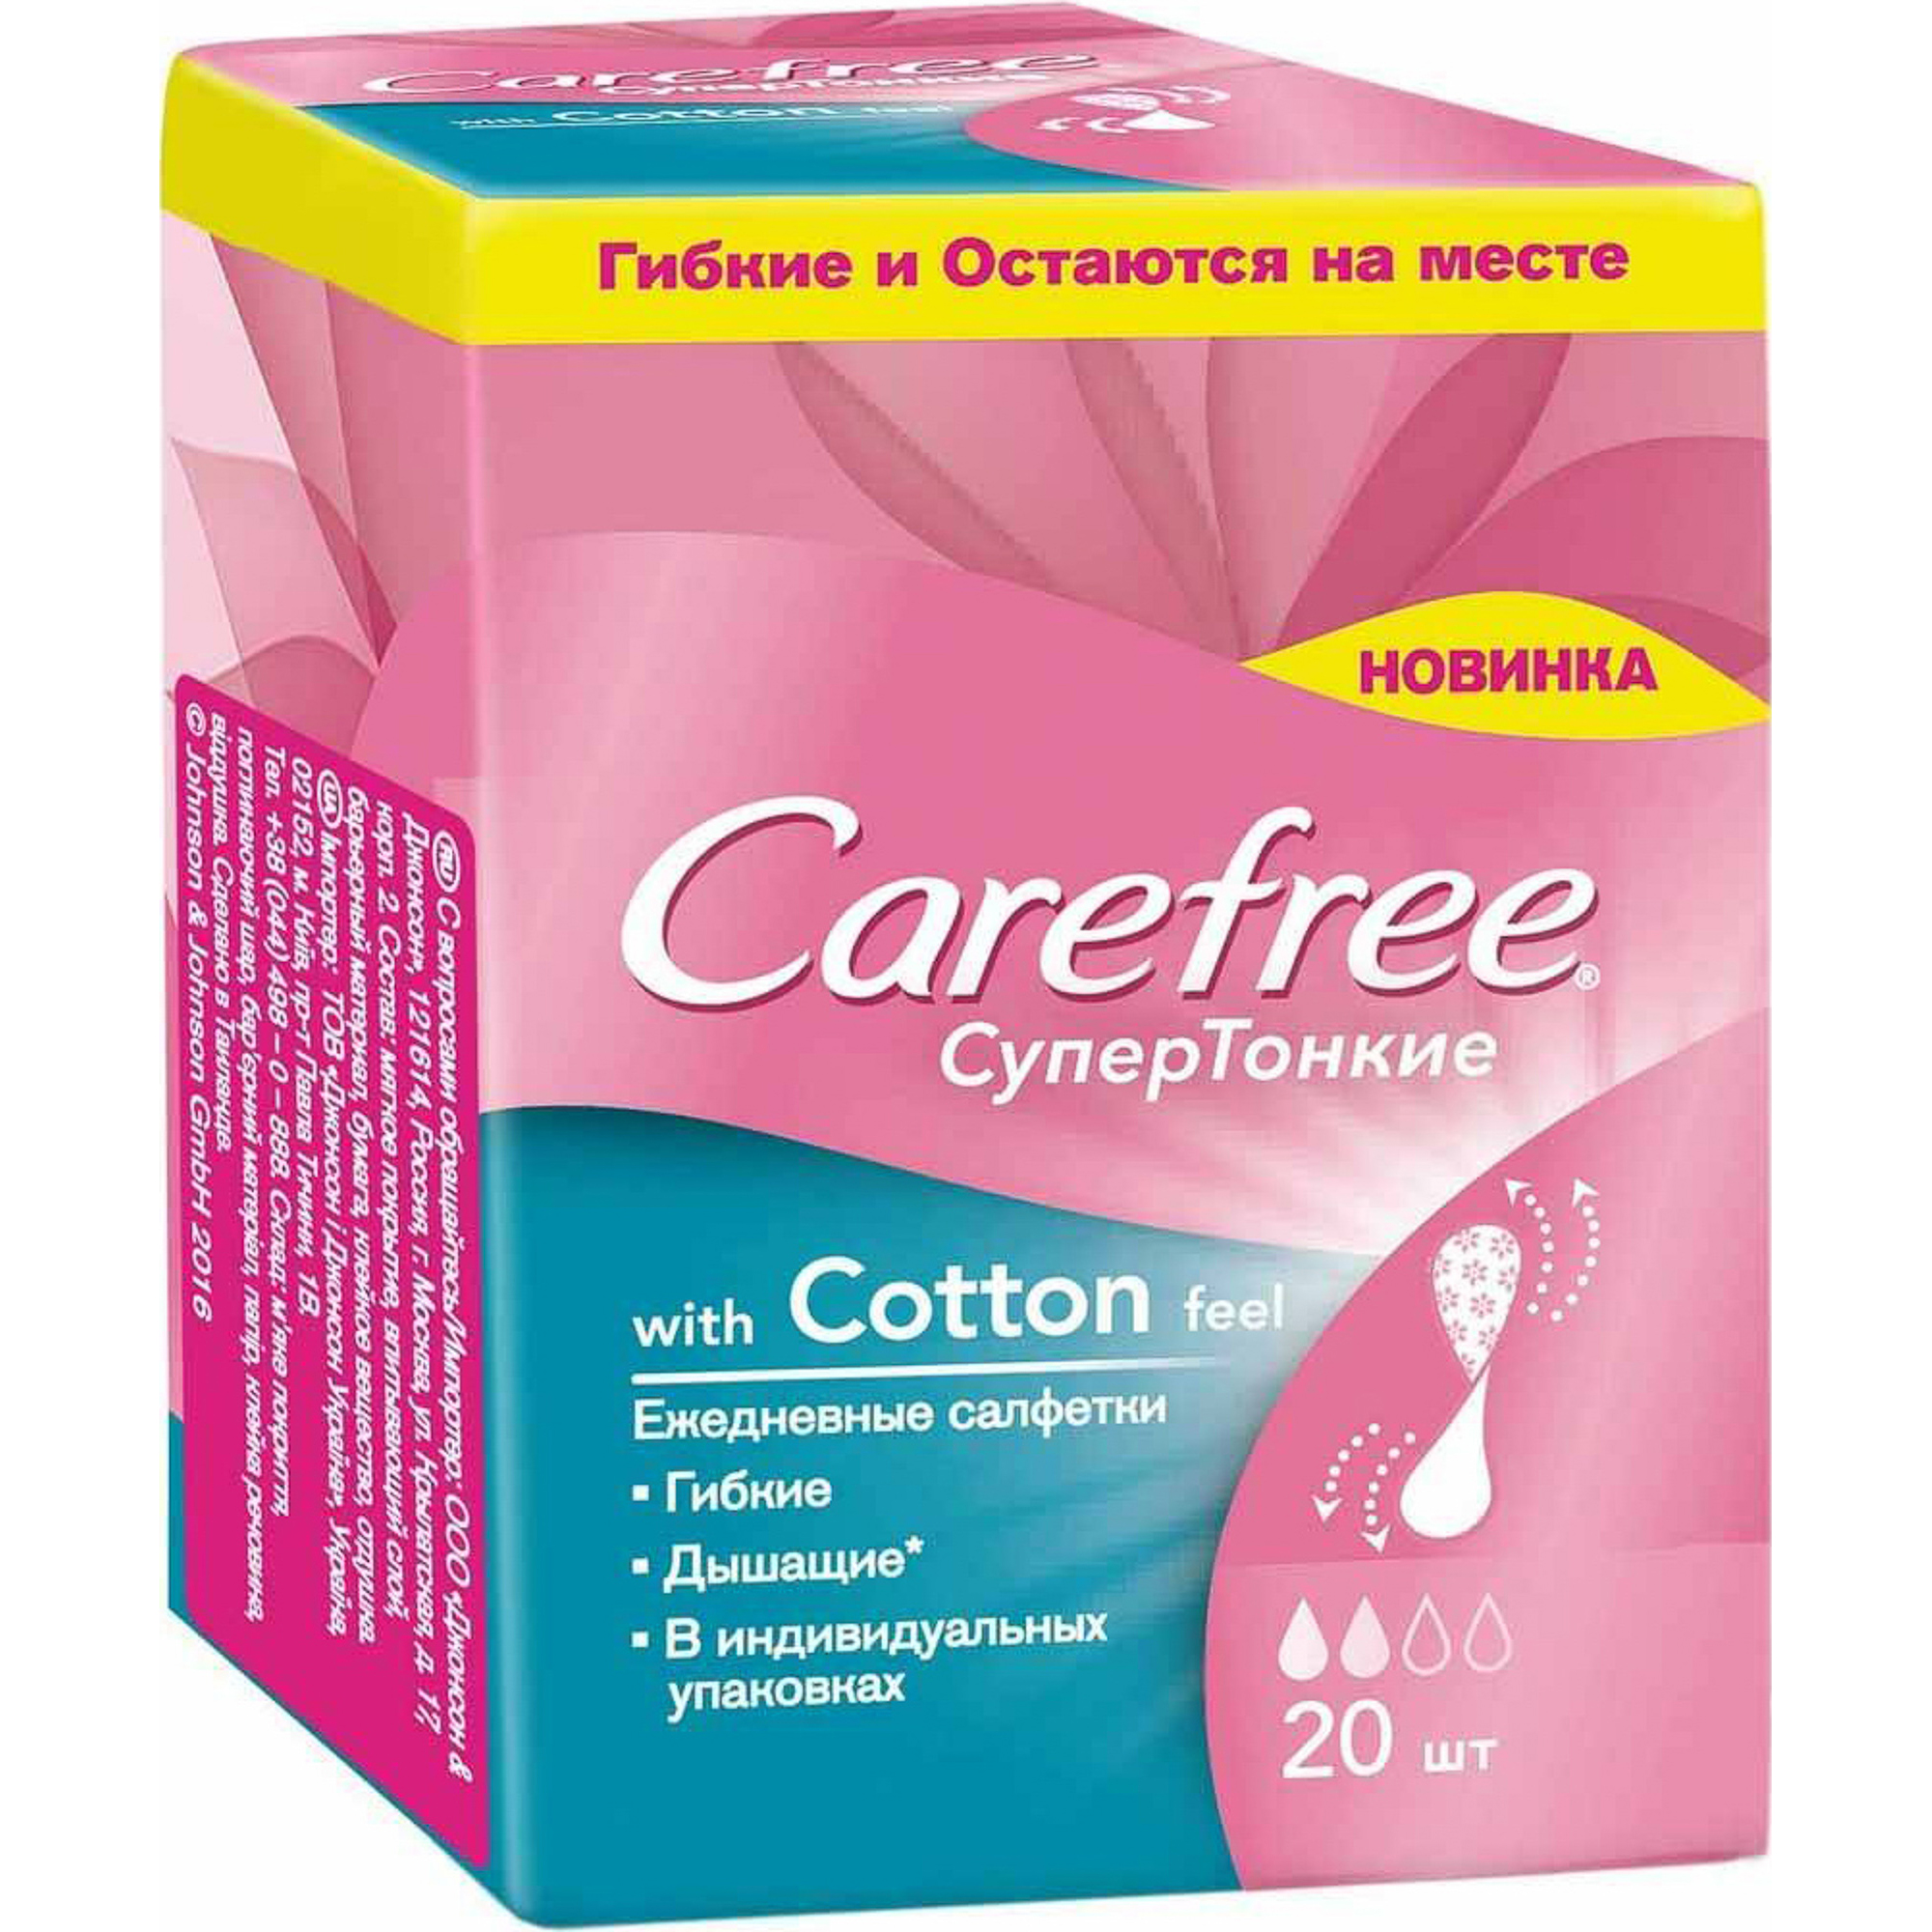 Прокладки Carefree СуперТонкие With Cotton Feel 20 шт